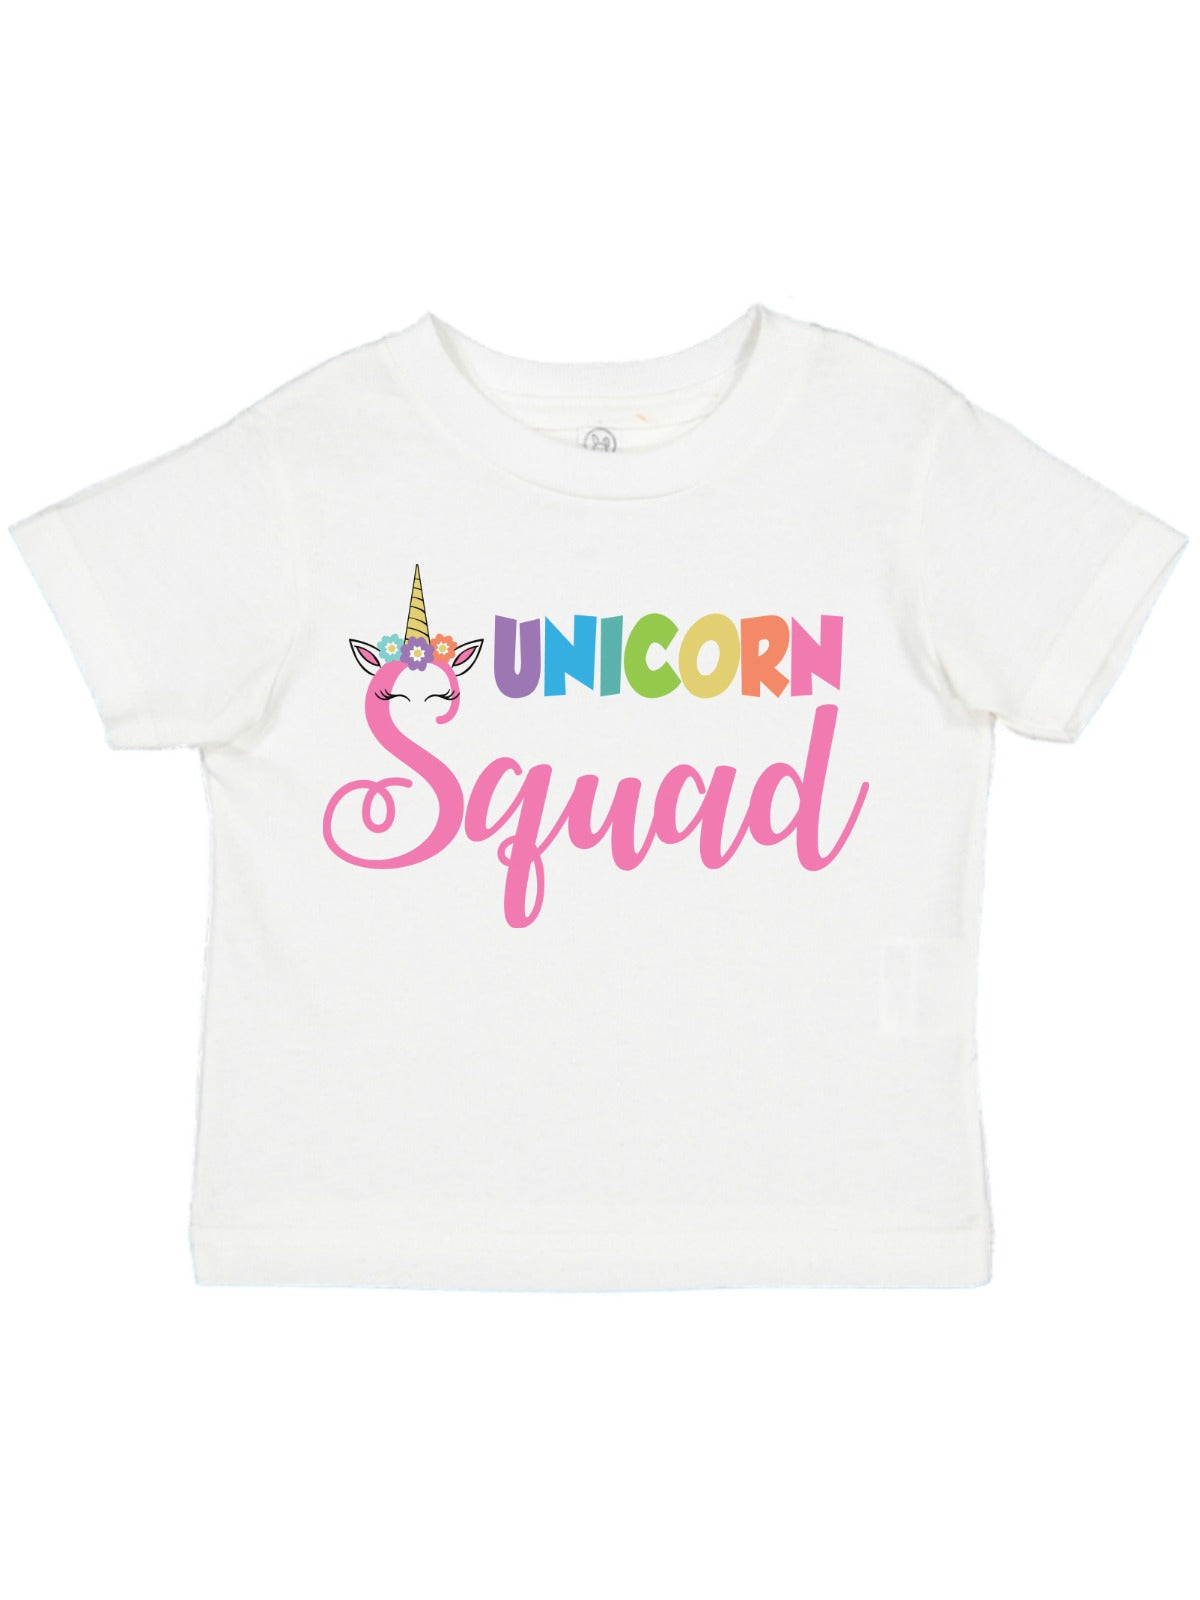 Unicorn Squad Shirts - All Sizes